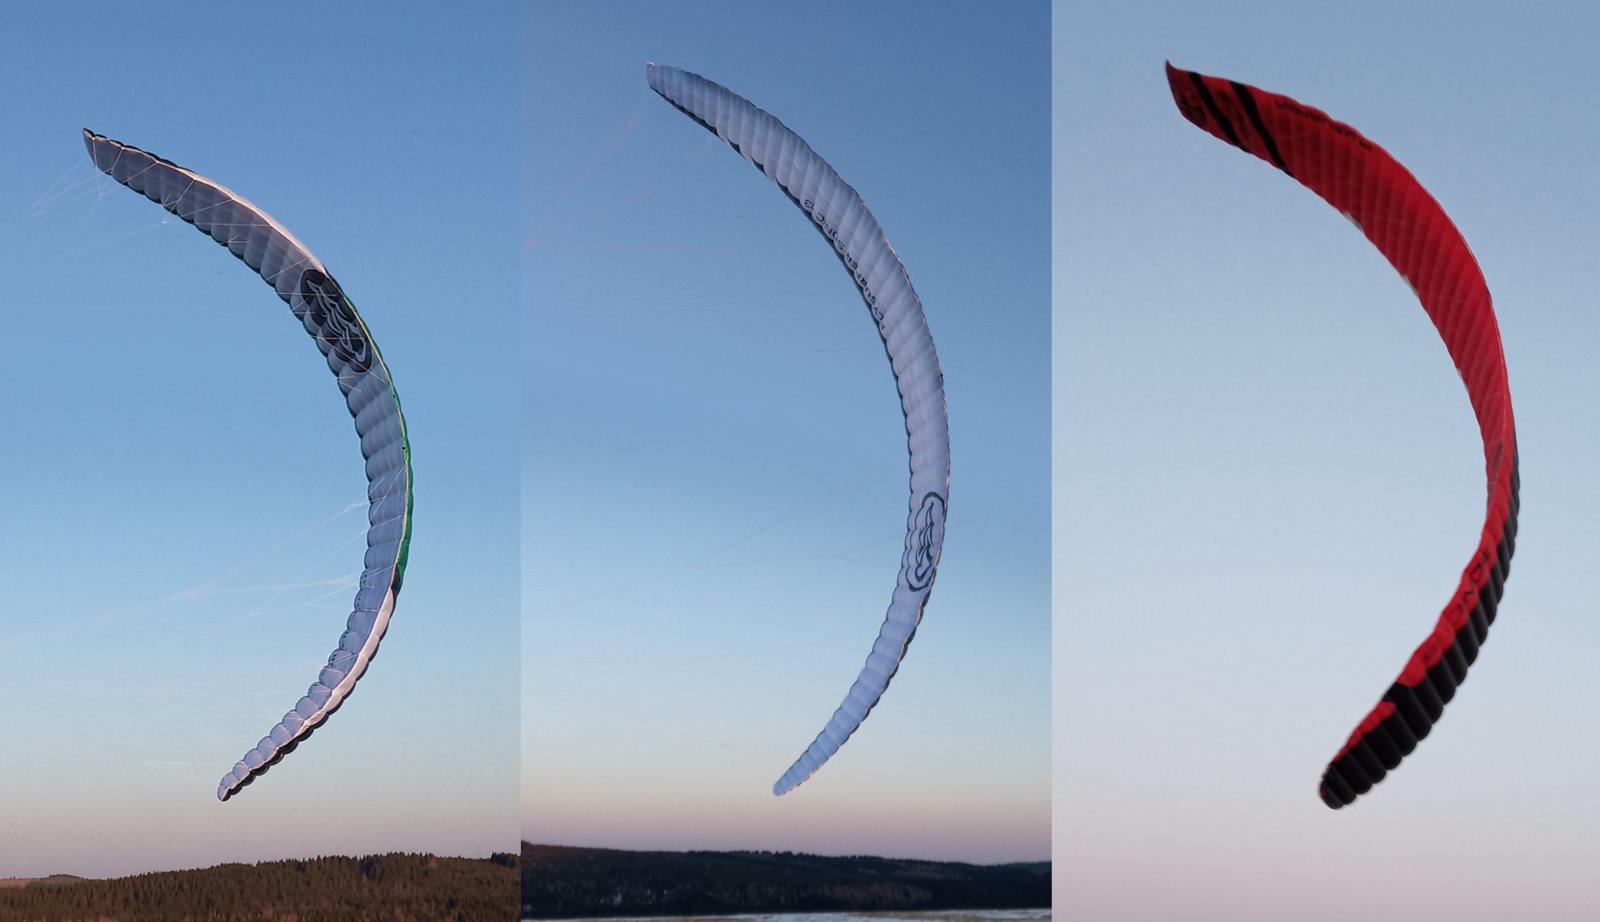 Kite Flysurfer Sonic3 - srovnání se Sonic2 a Soul - tvar draků